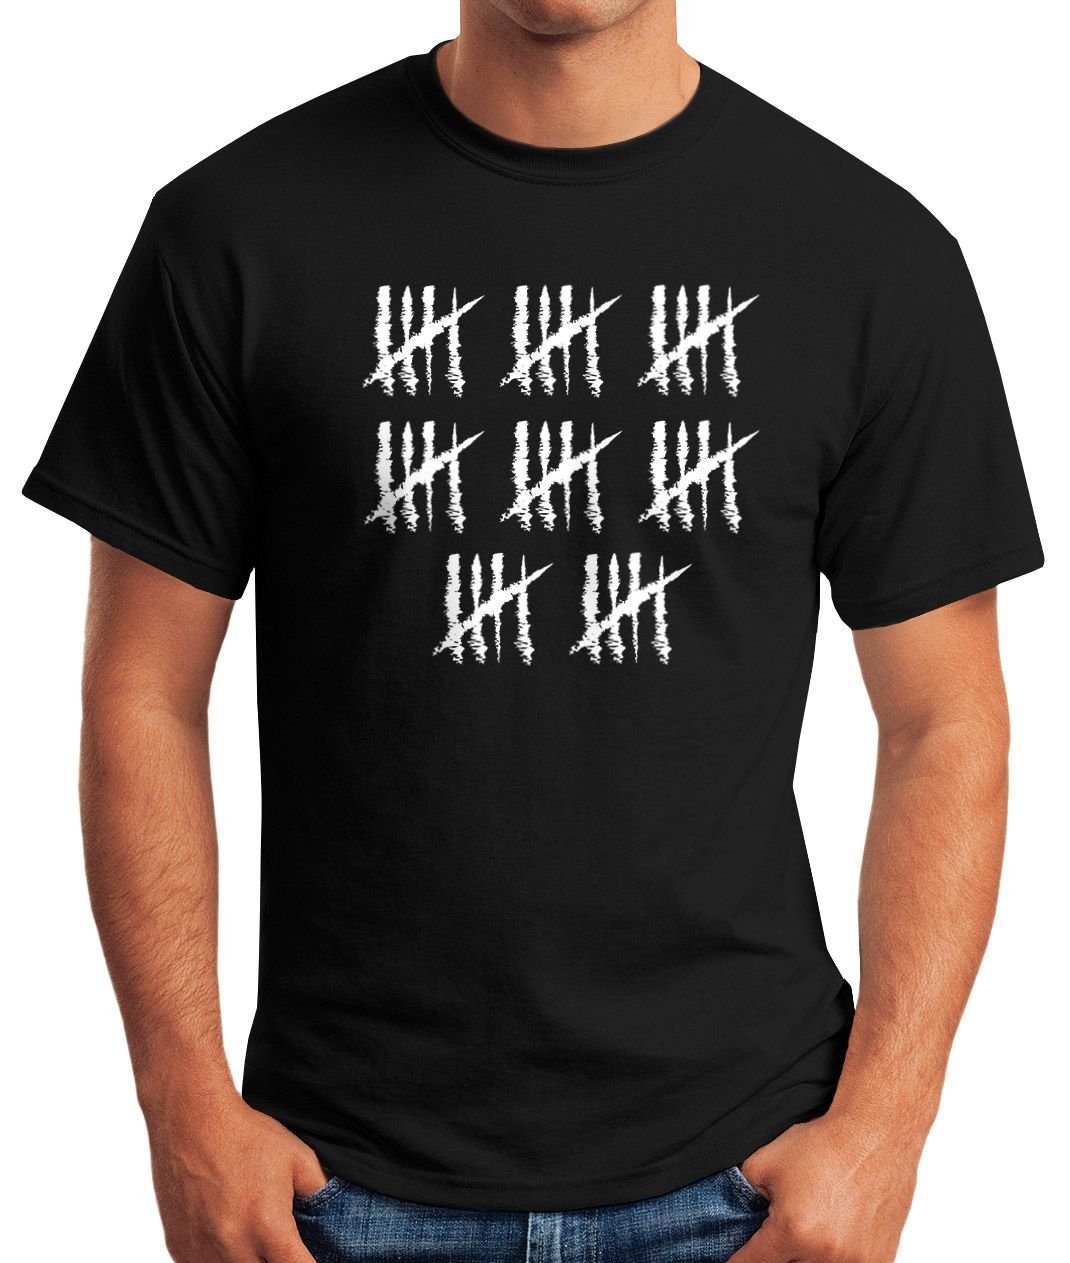 Fun-Shirt Geburtstag [object Alter Striche mit Object] 40 Strichliste Print-Shirt schwarz Jahrgang Geschenk T-Shirt Herren Jubiläum Moonworks® MoonWorks Print